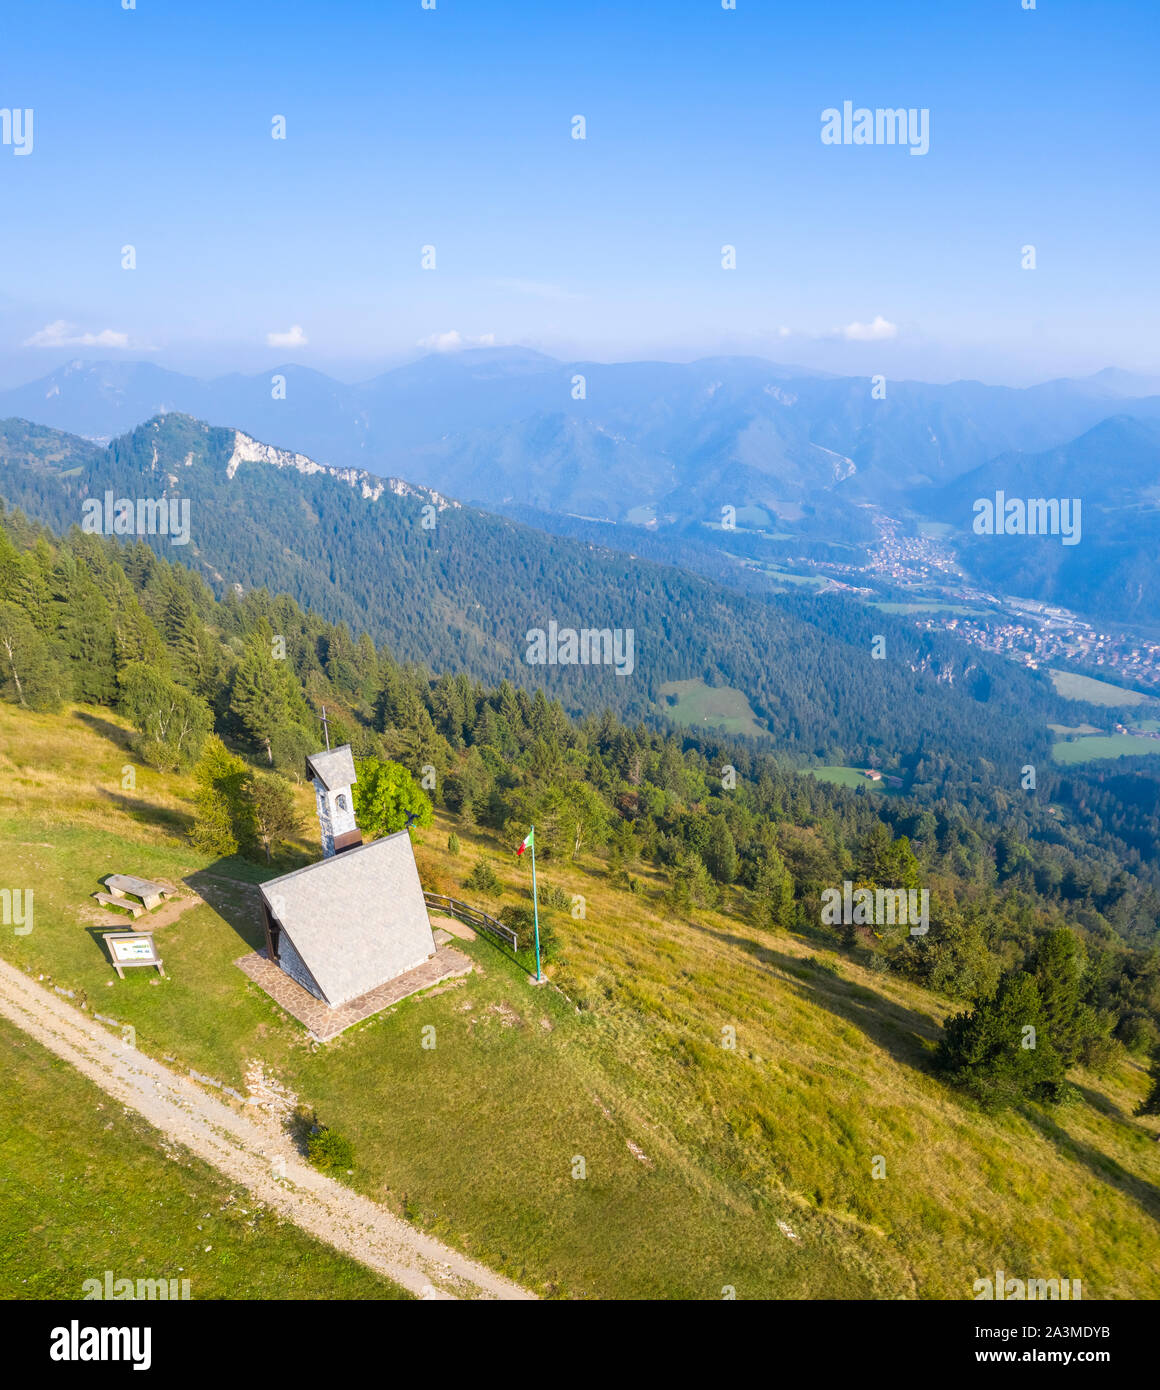 Vue aérienne de la Chiesetta degli Alpini de Monte Blum et Cima Paré. Rovetta, vallée Seriana, Lombardie, province de Bergame, en Italie. Banque D'Images